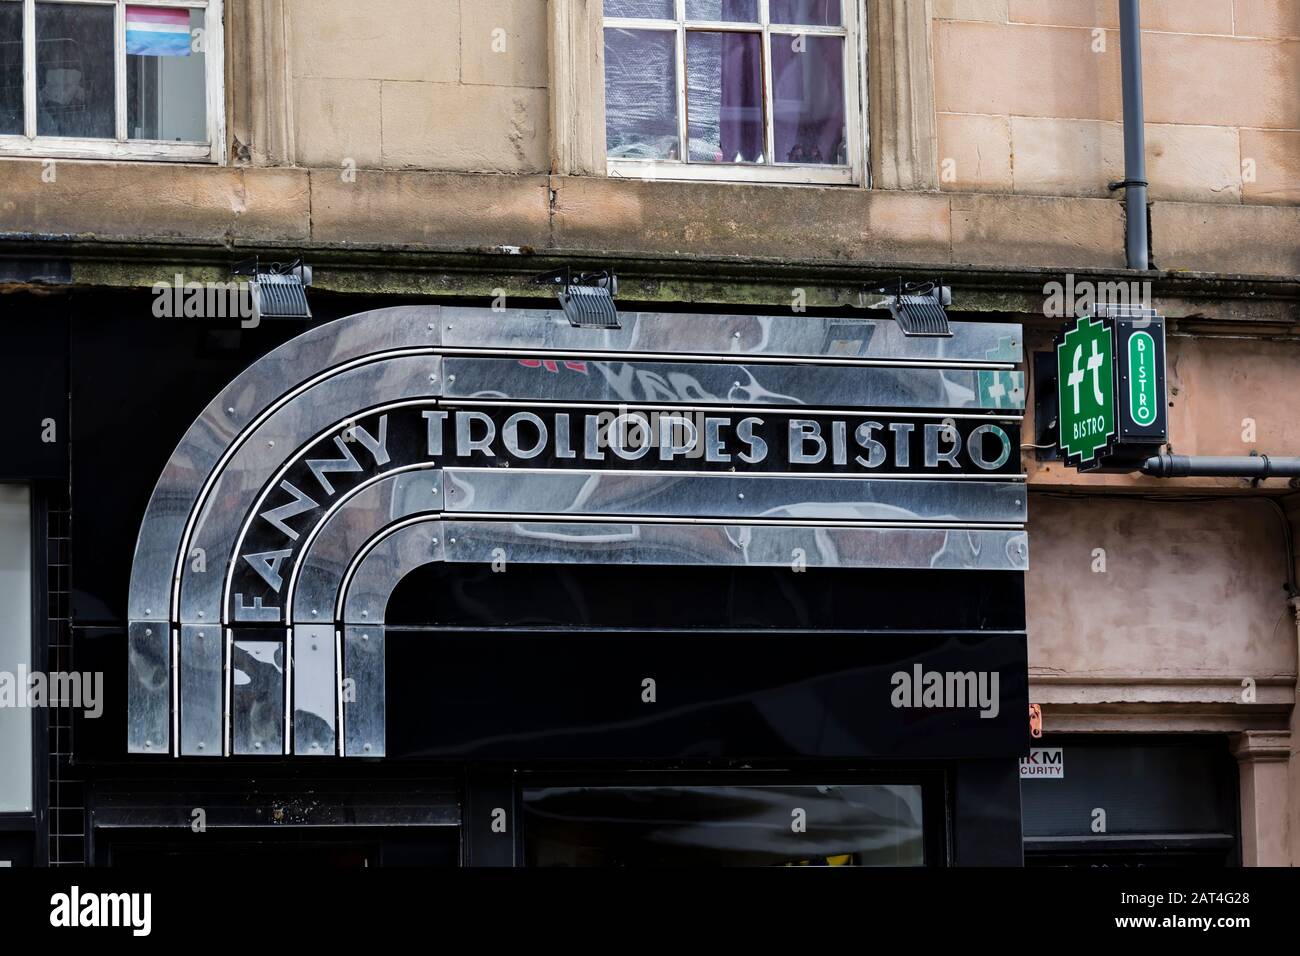 Fanny Trollopes Bistro sign in Finnieston on Argyle Street, Glasgow, Scotland, UK Stock Photo